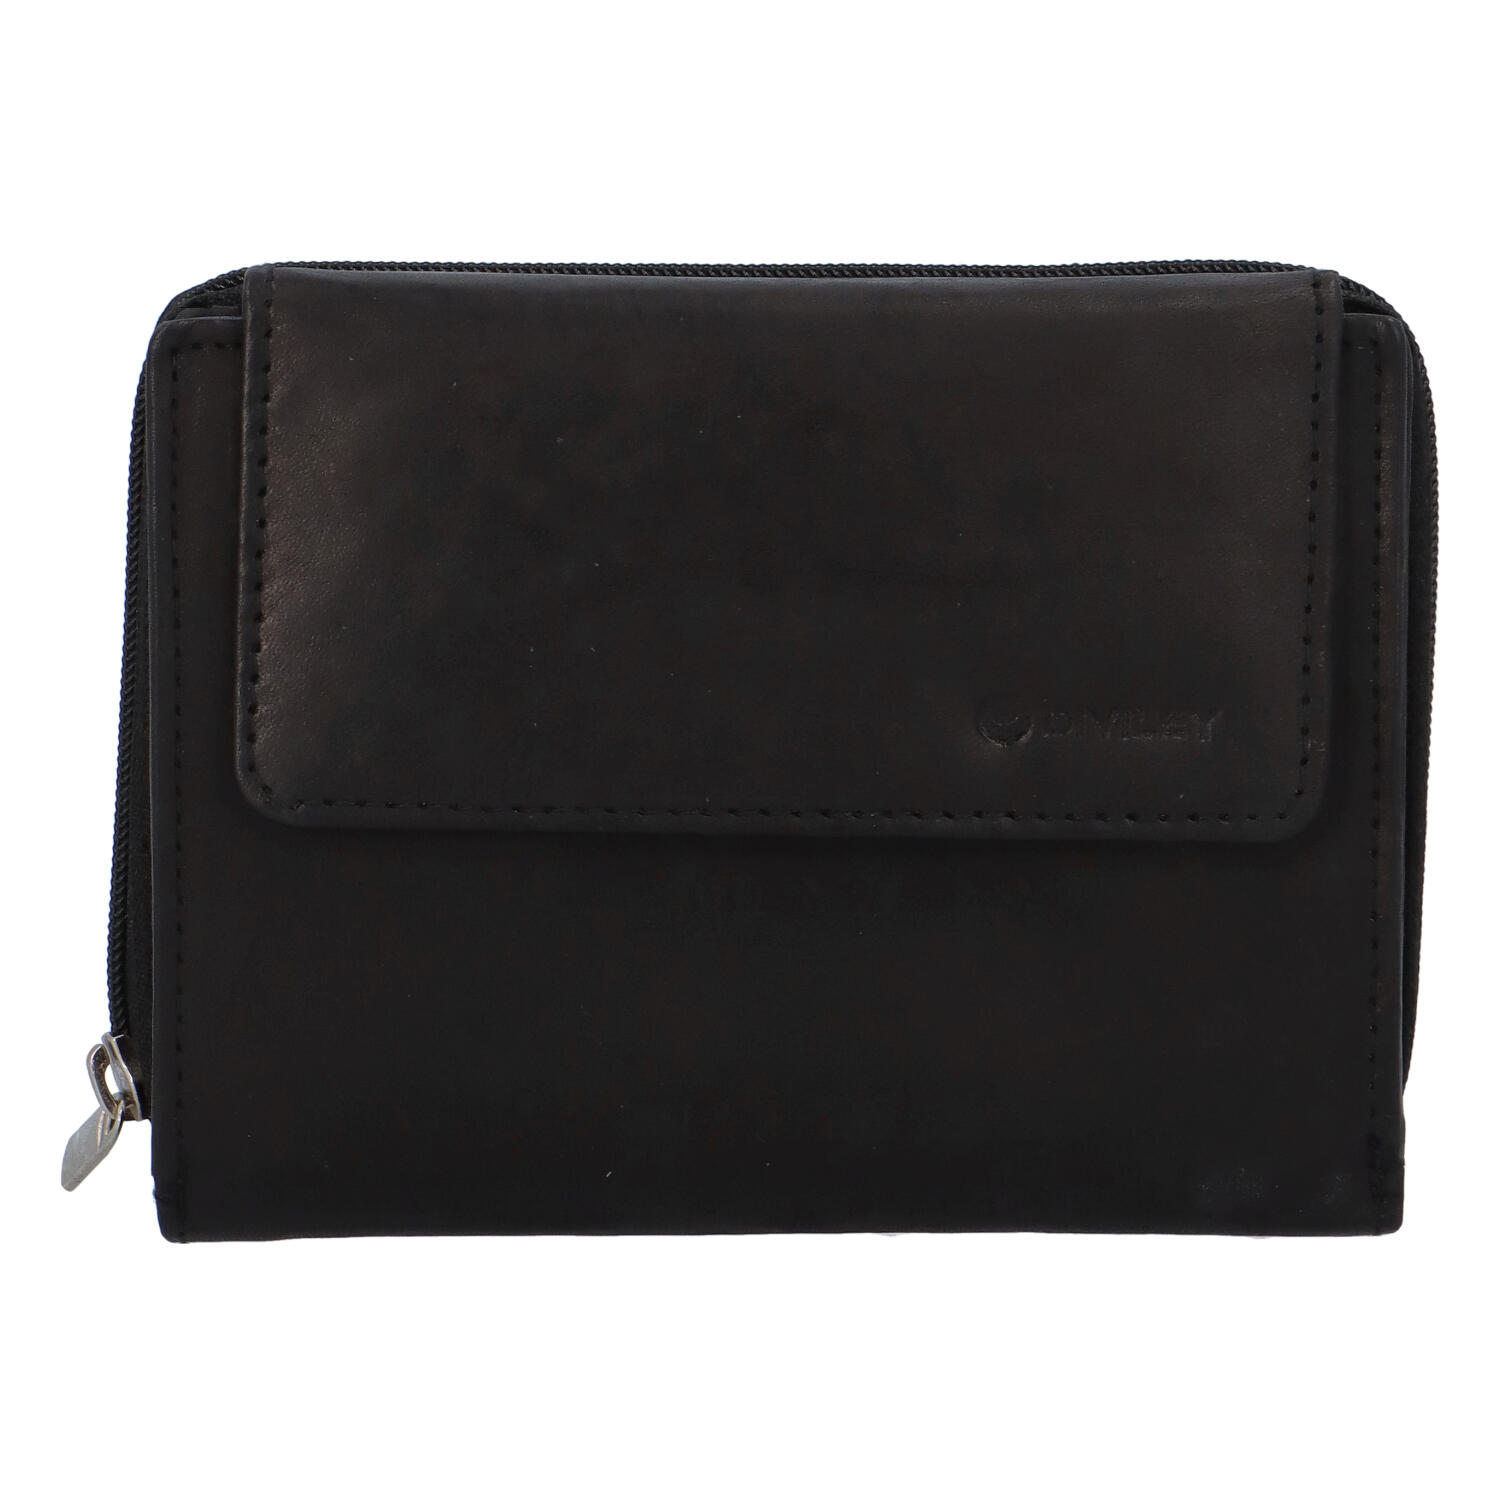 Dámska rozkladacia kožená peňaženka čierna - Diviley M4200 čierna